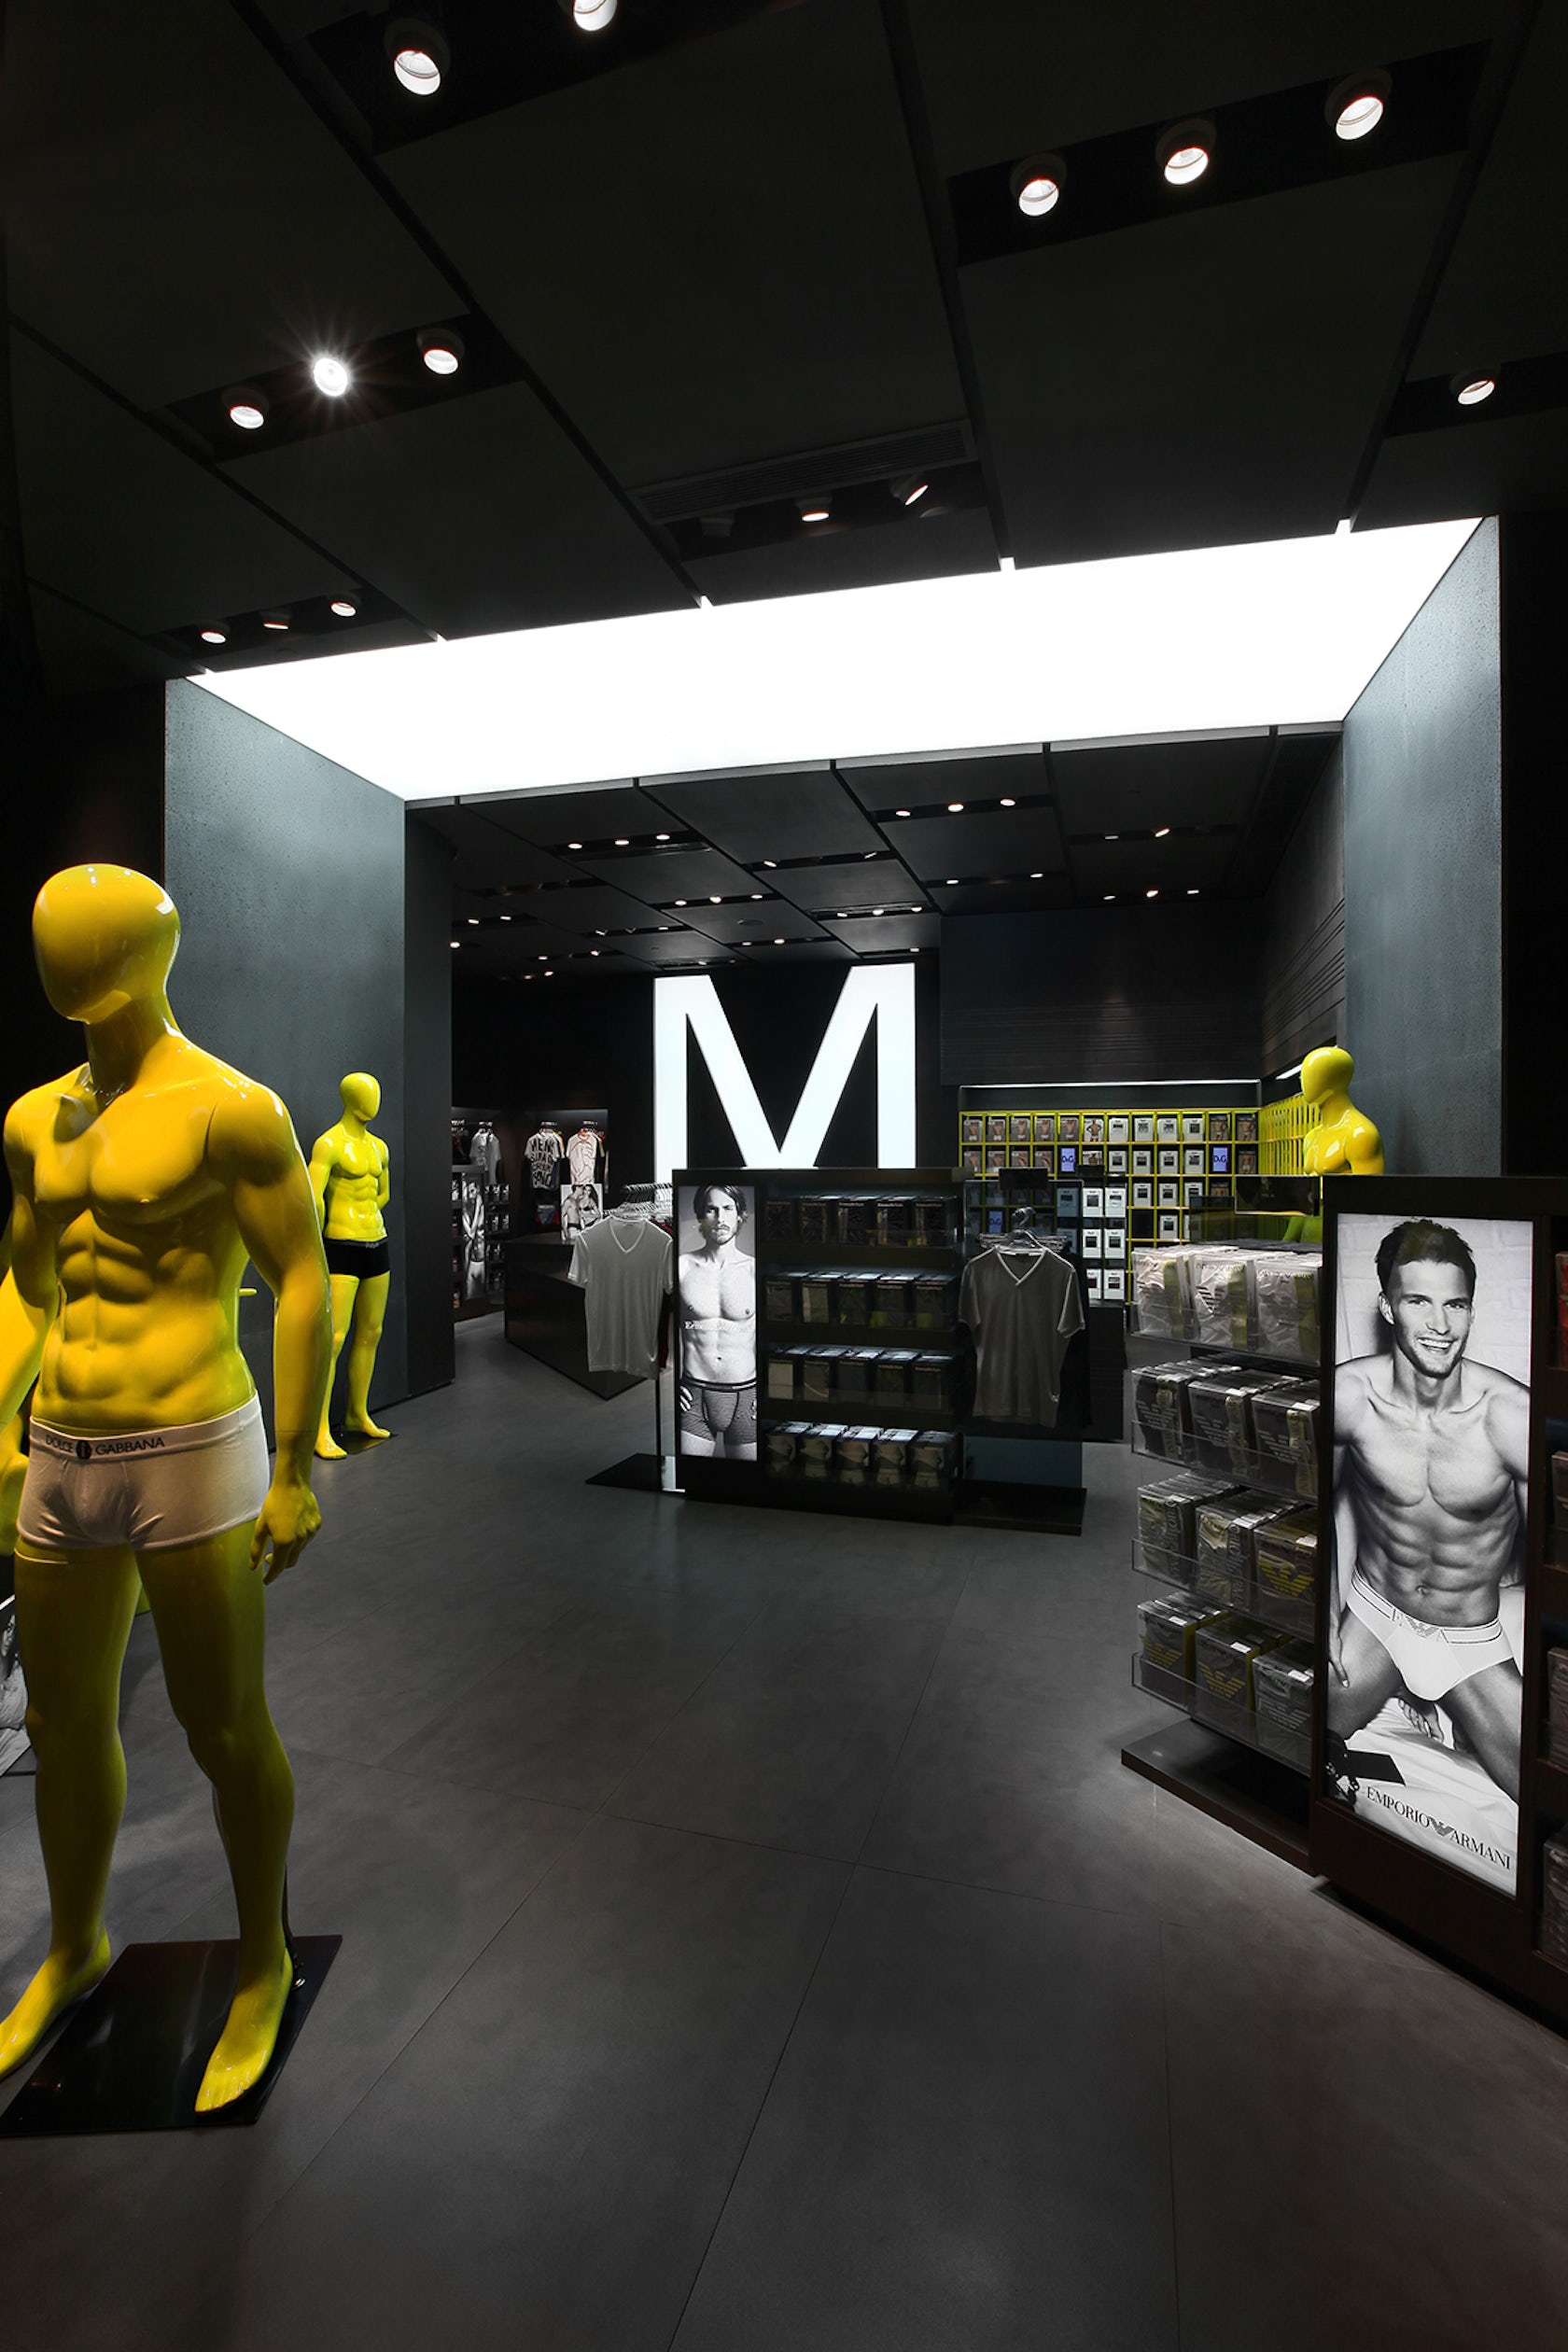 UM Top Fashion Men's Underwear Brand Shop by AS Design Service Limited -  Architizer